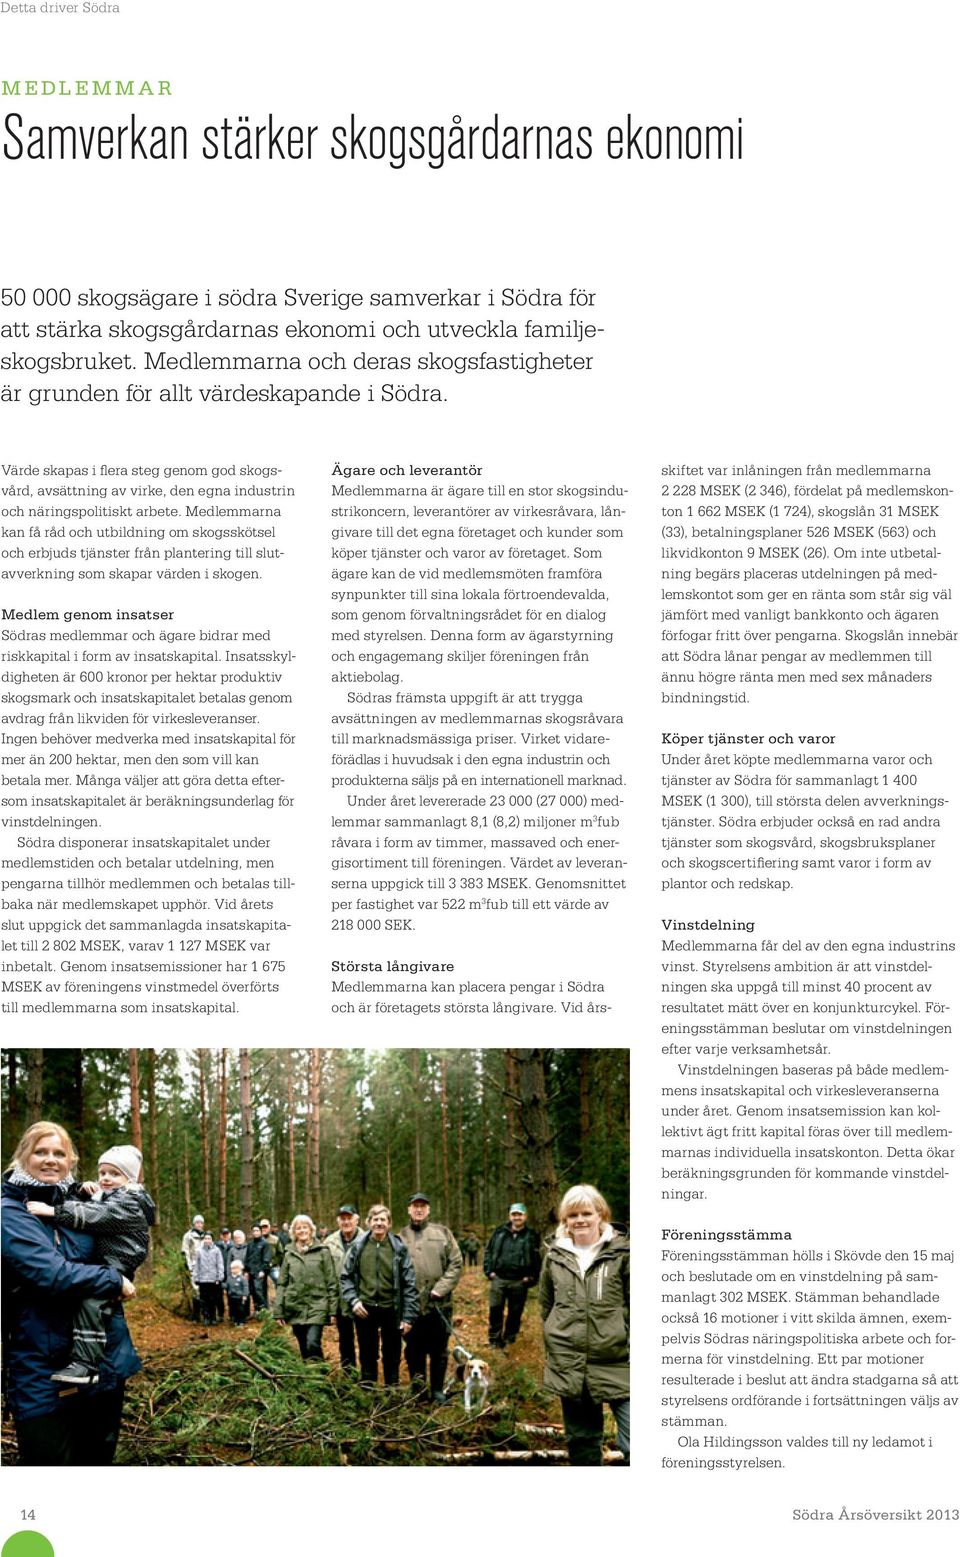 Medlemmarna kan få råd och utbildning om skogsskötsel och erbjuds tjänster från plantering till slutavverkning som skapar värden i skogen.